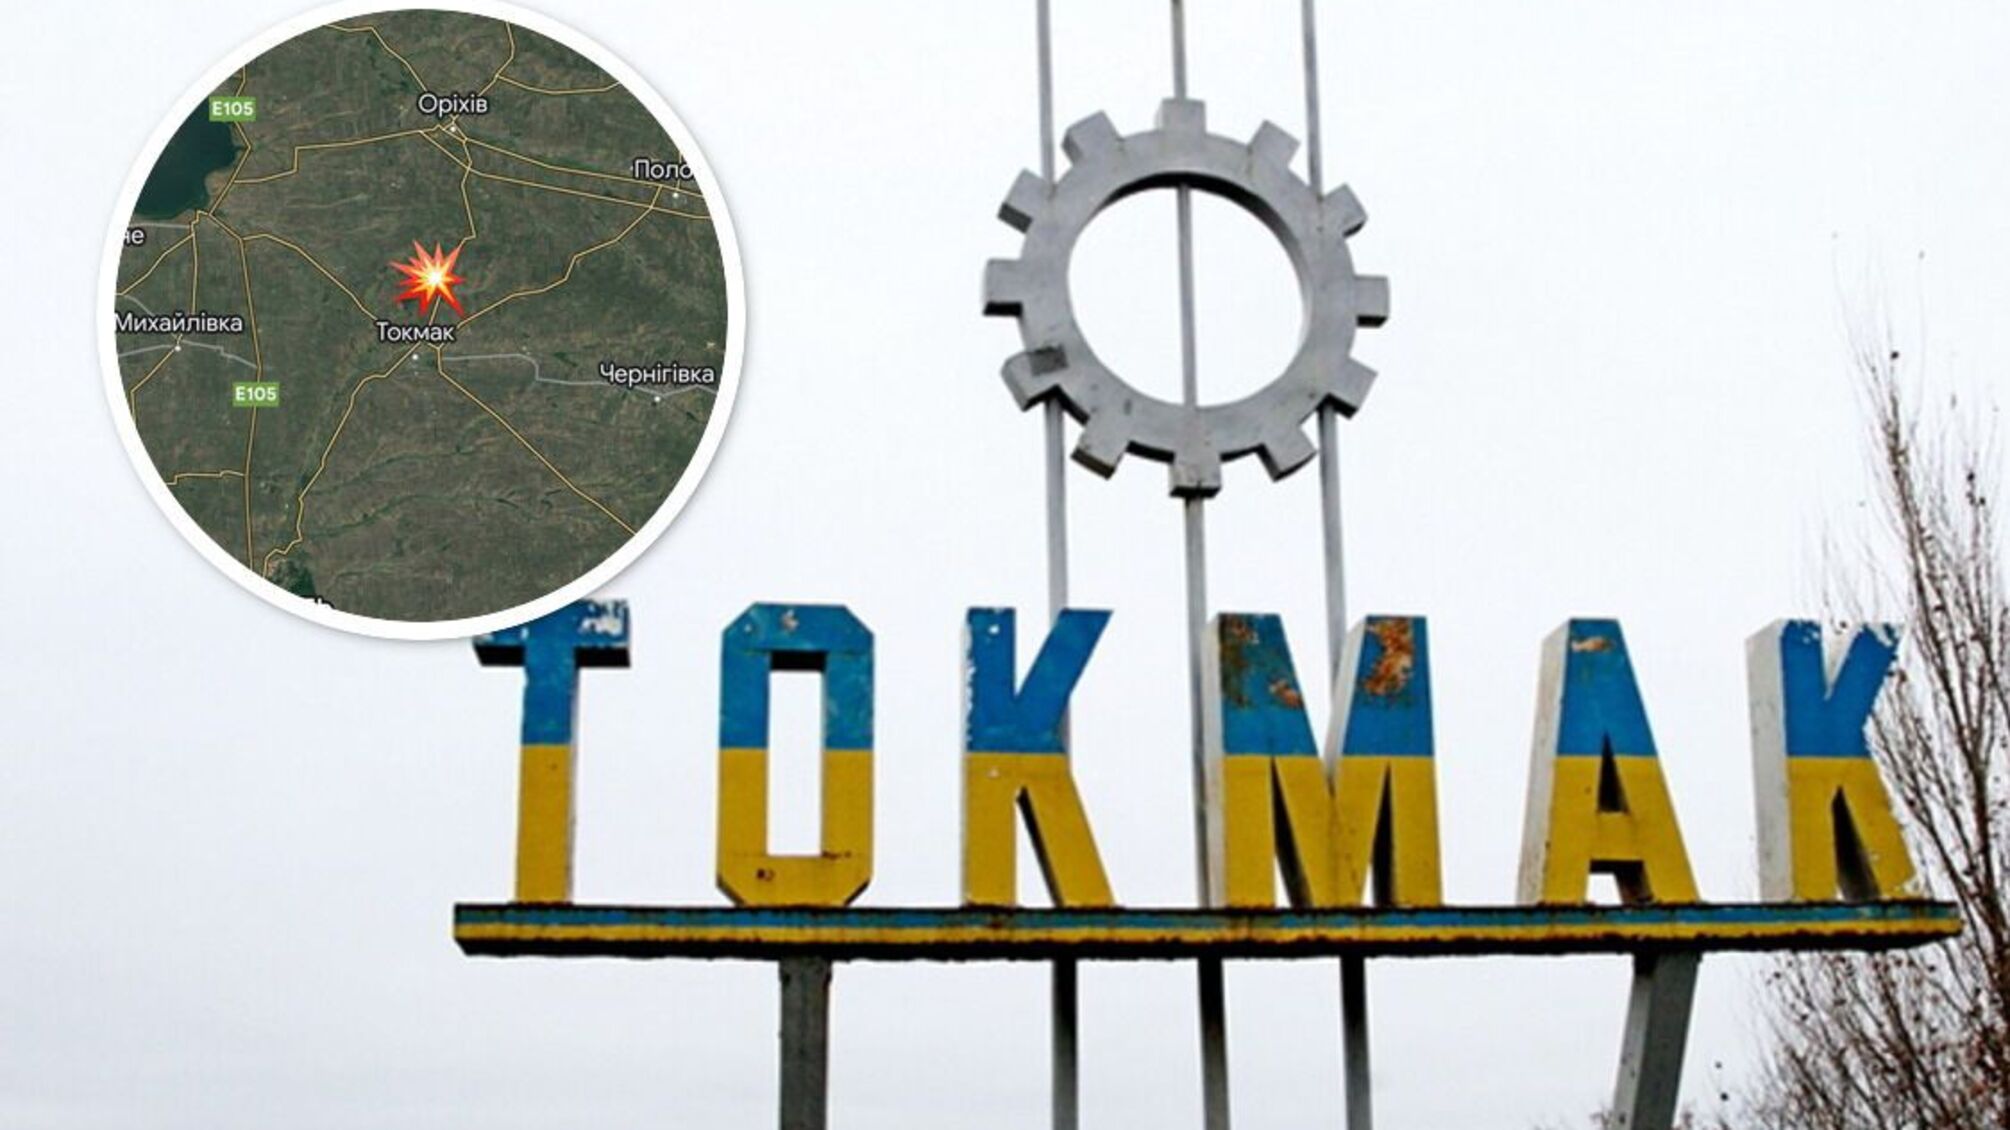 Запорожская область: возле Токмака раздалось несколько громких взрывов - что известно